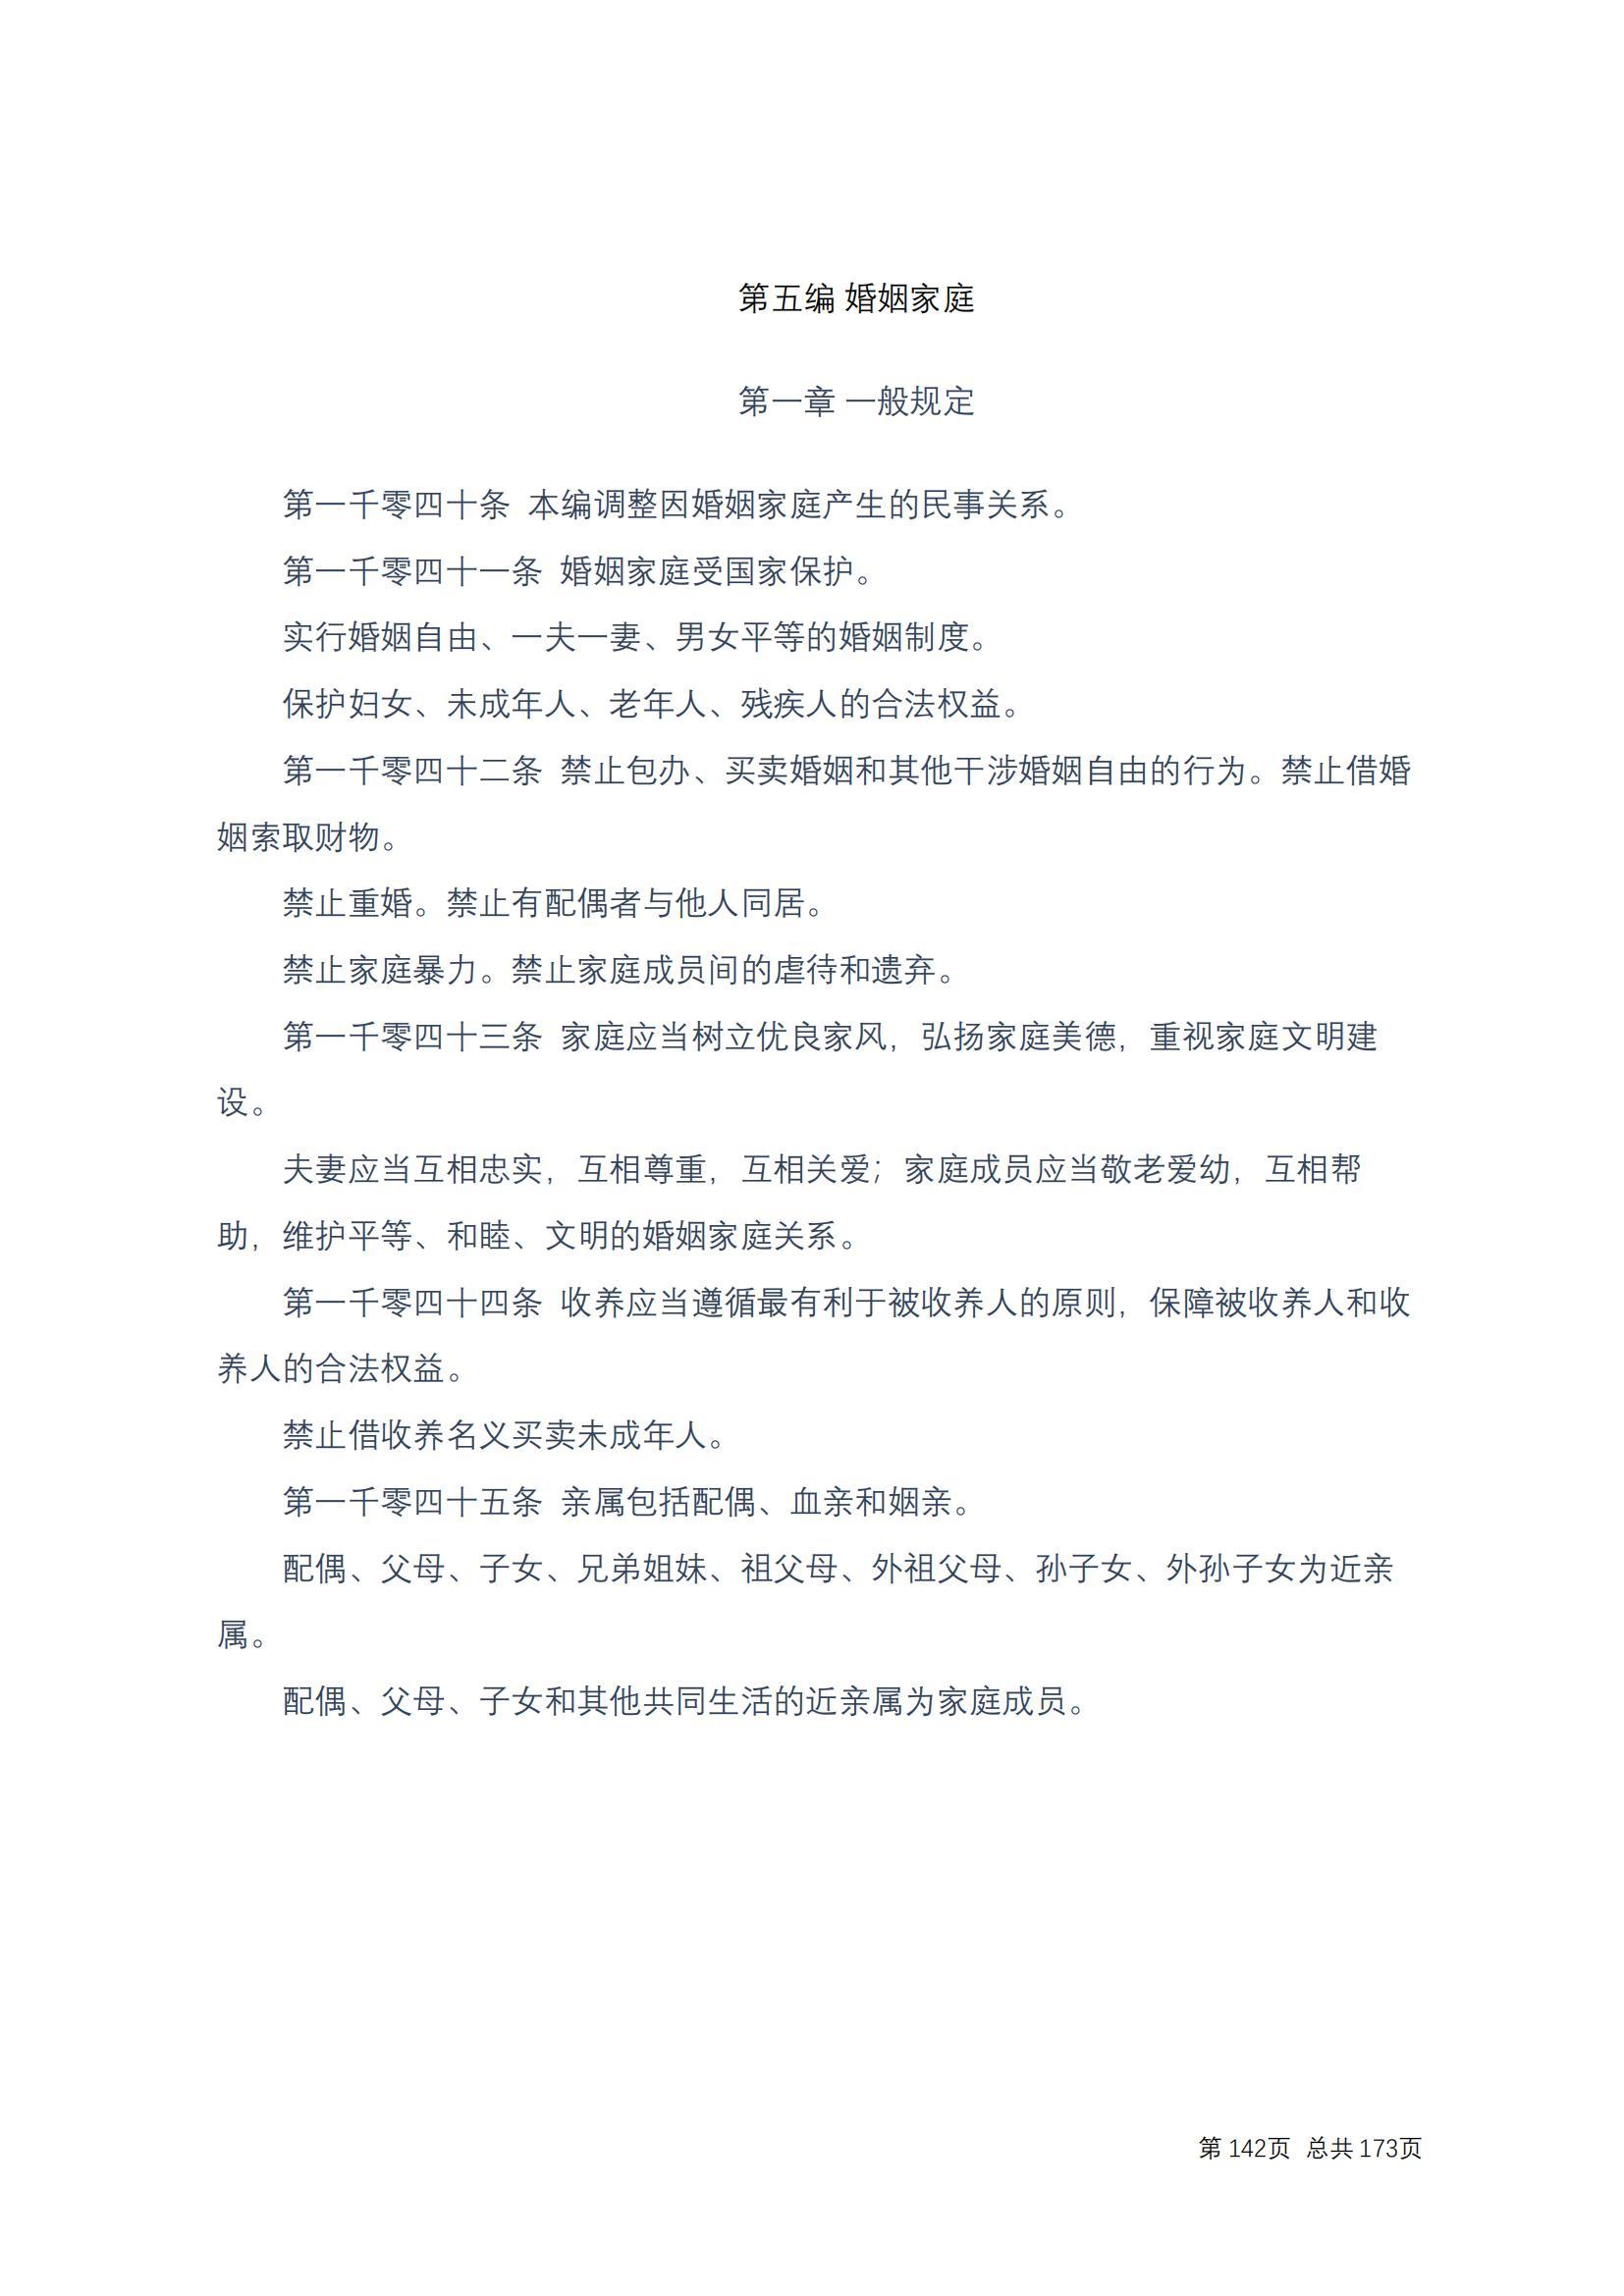 中华人民共和国民法典 修改过_141